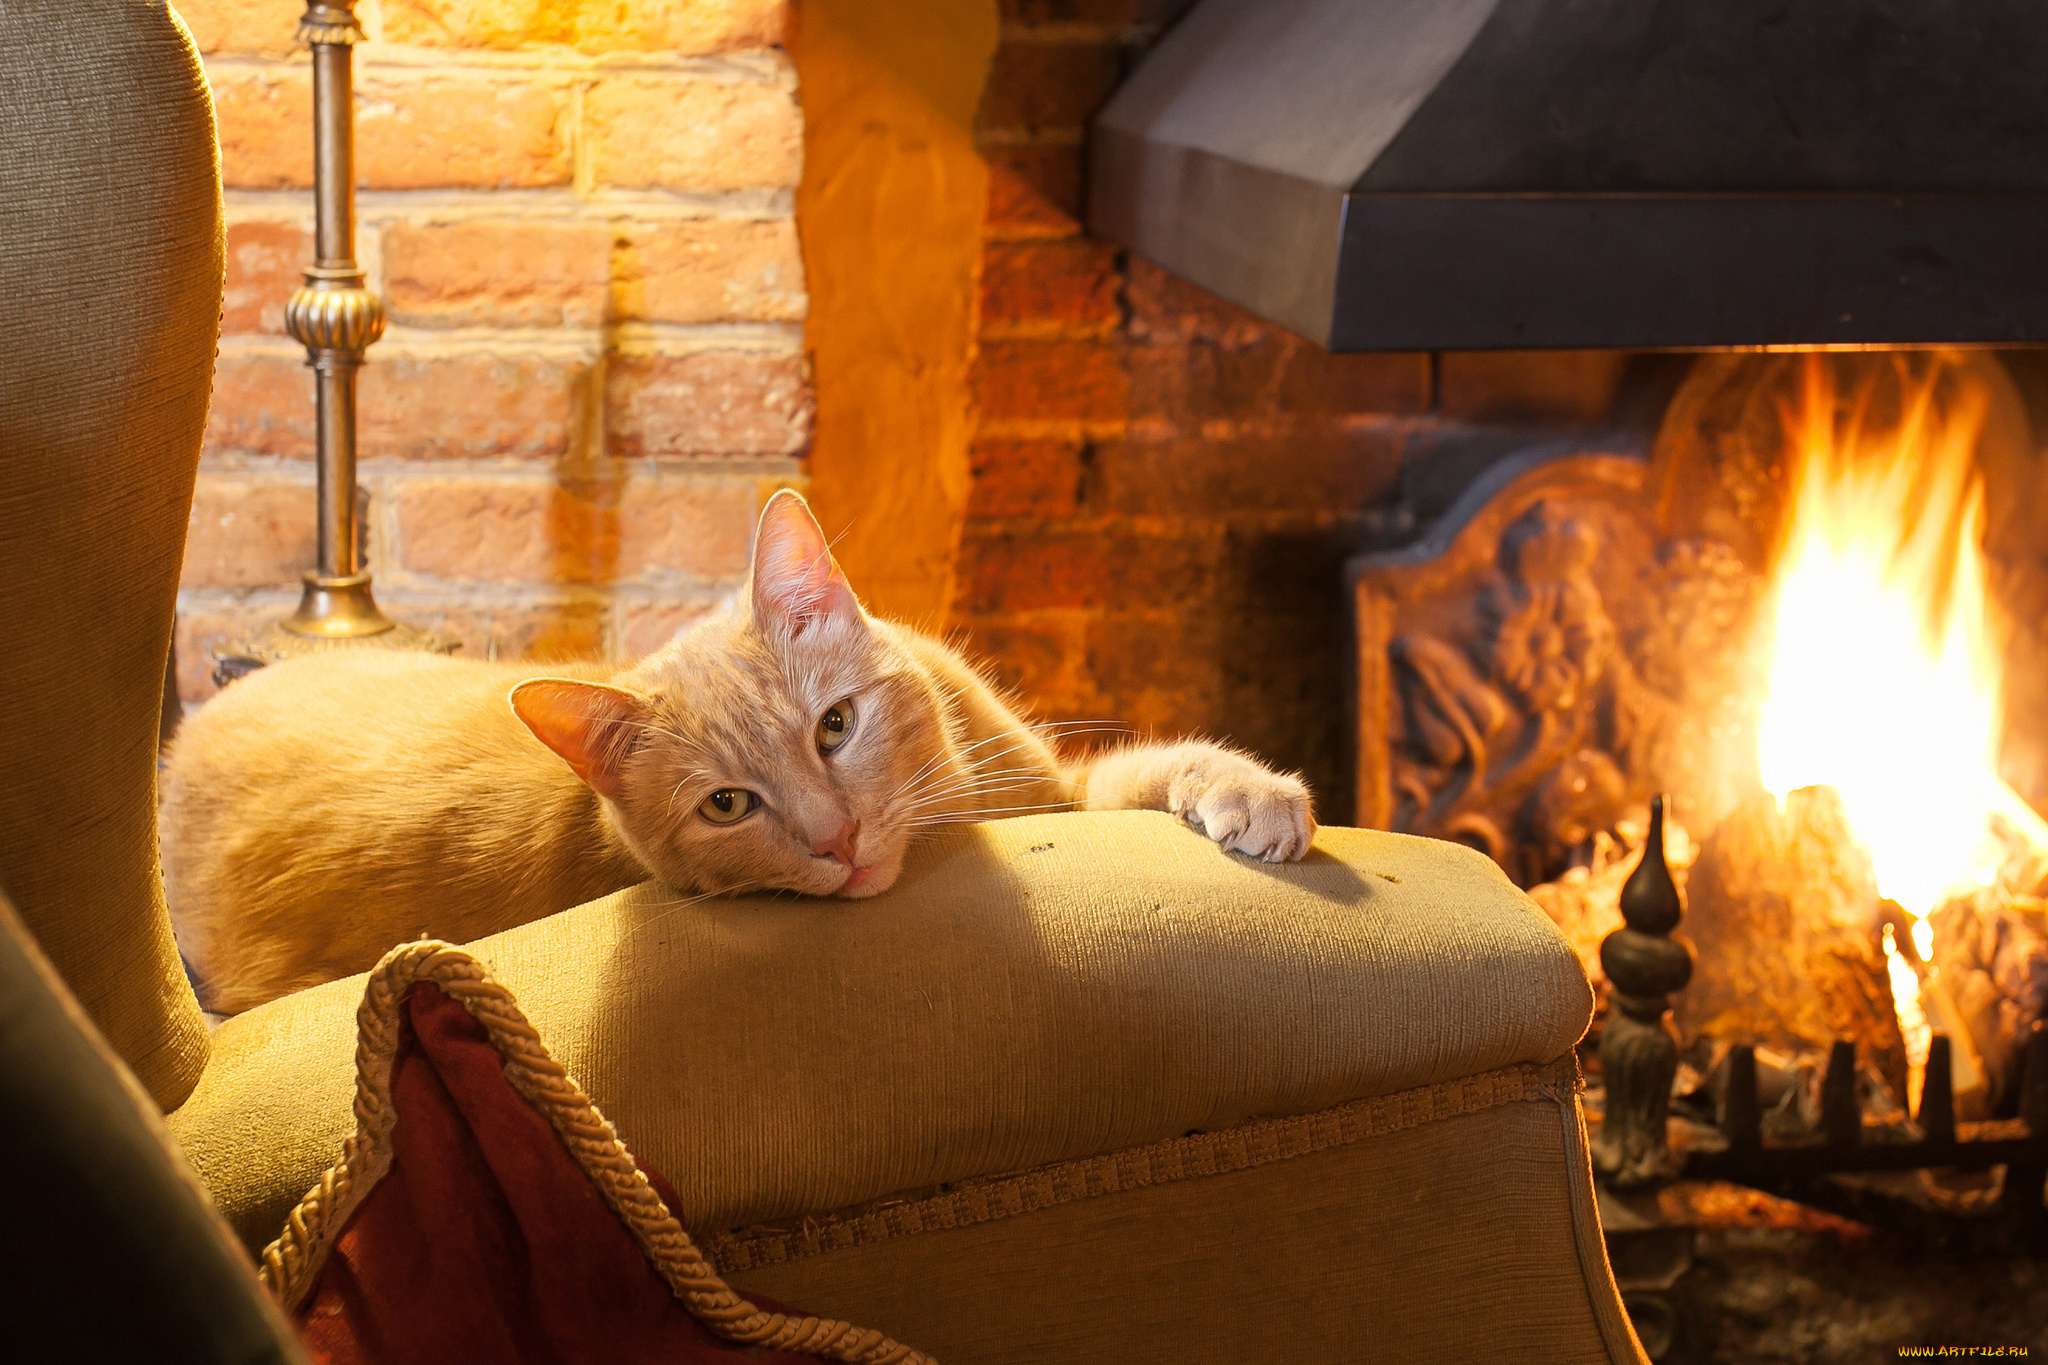 Вечера с котиком 1. Уютного вечера. Котик у камина. Домашний уют. Теплый уютный камин и кот.